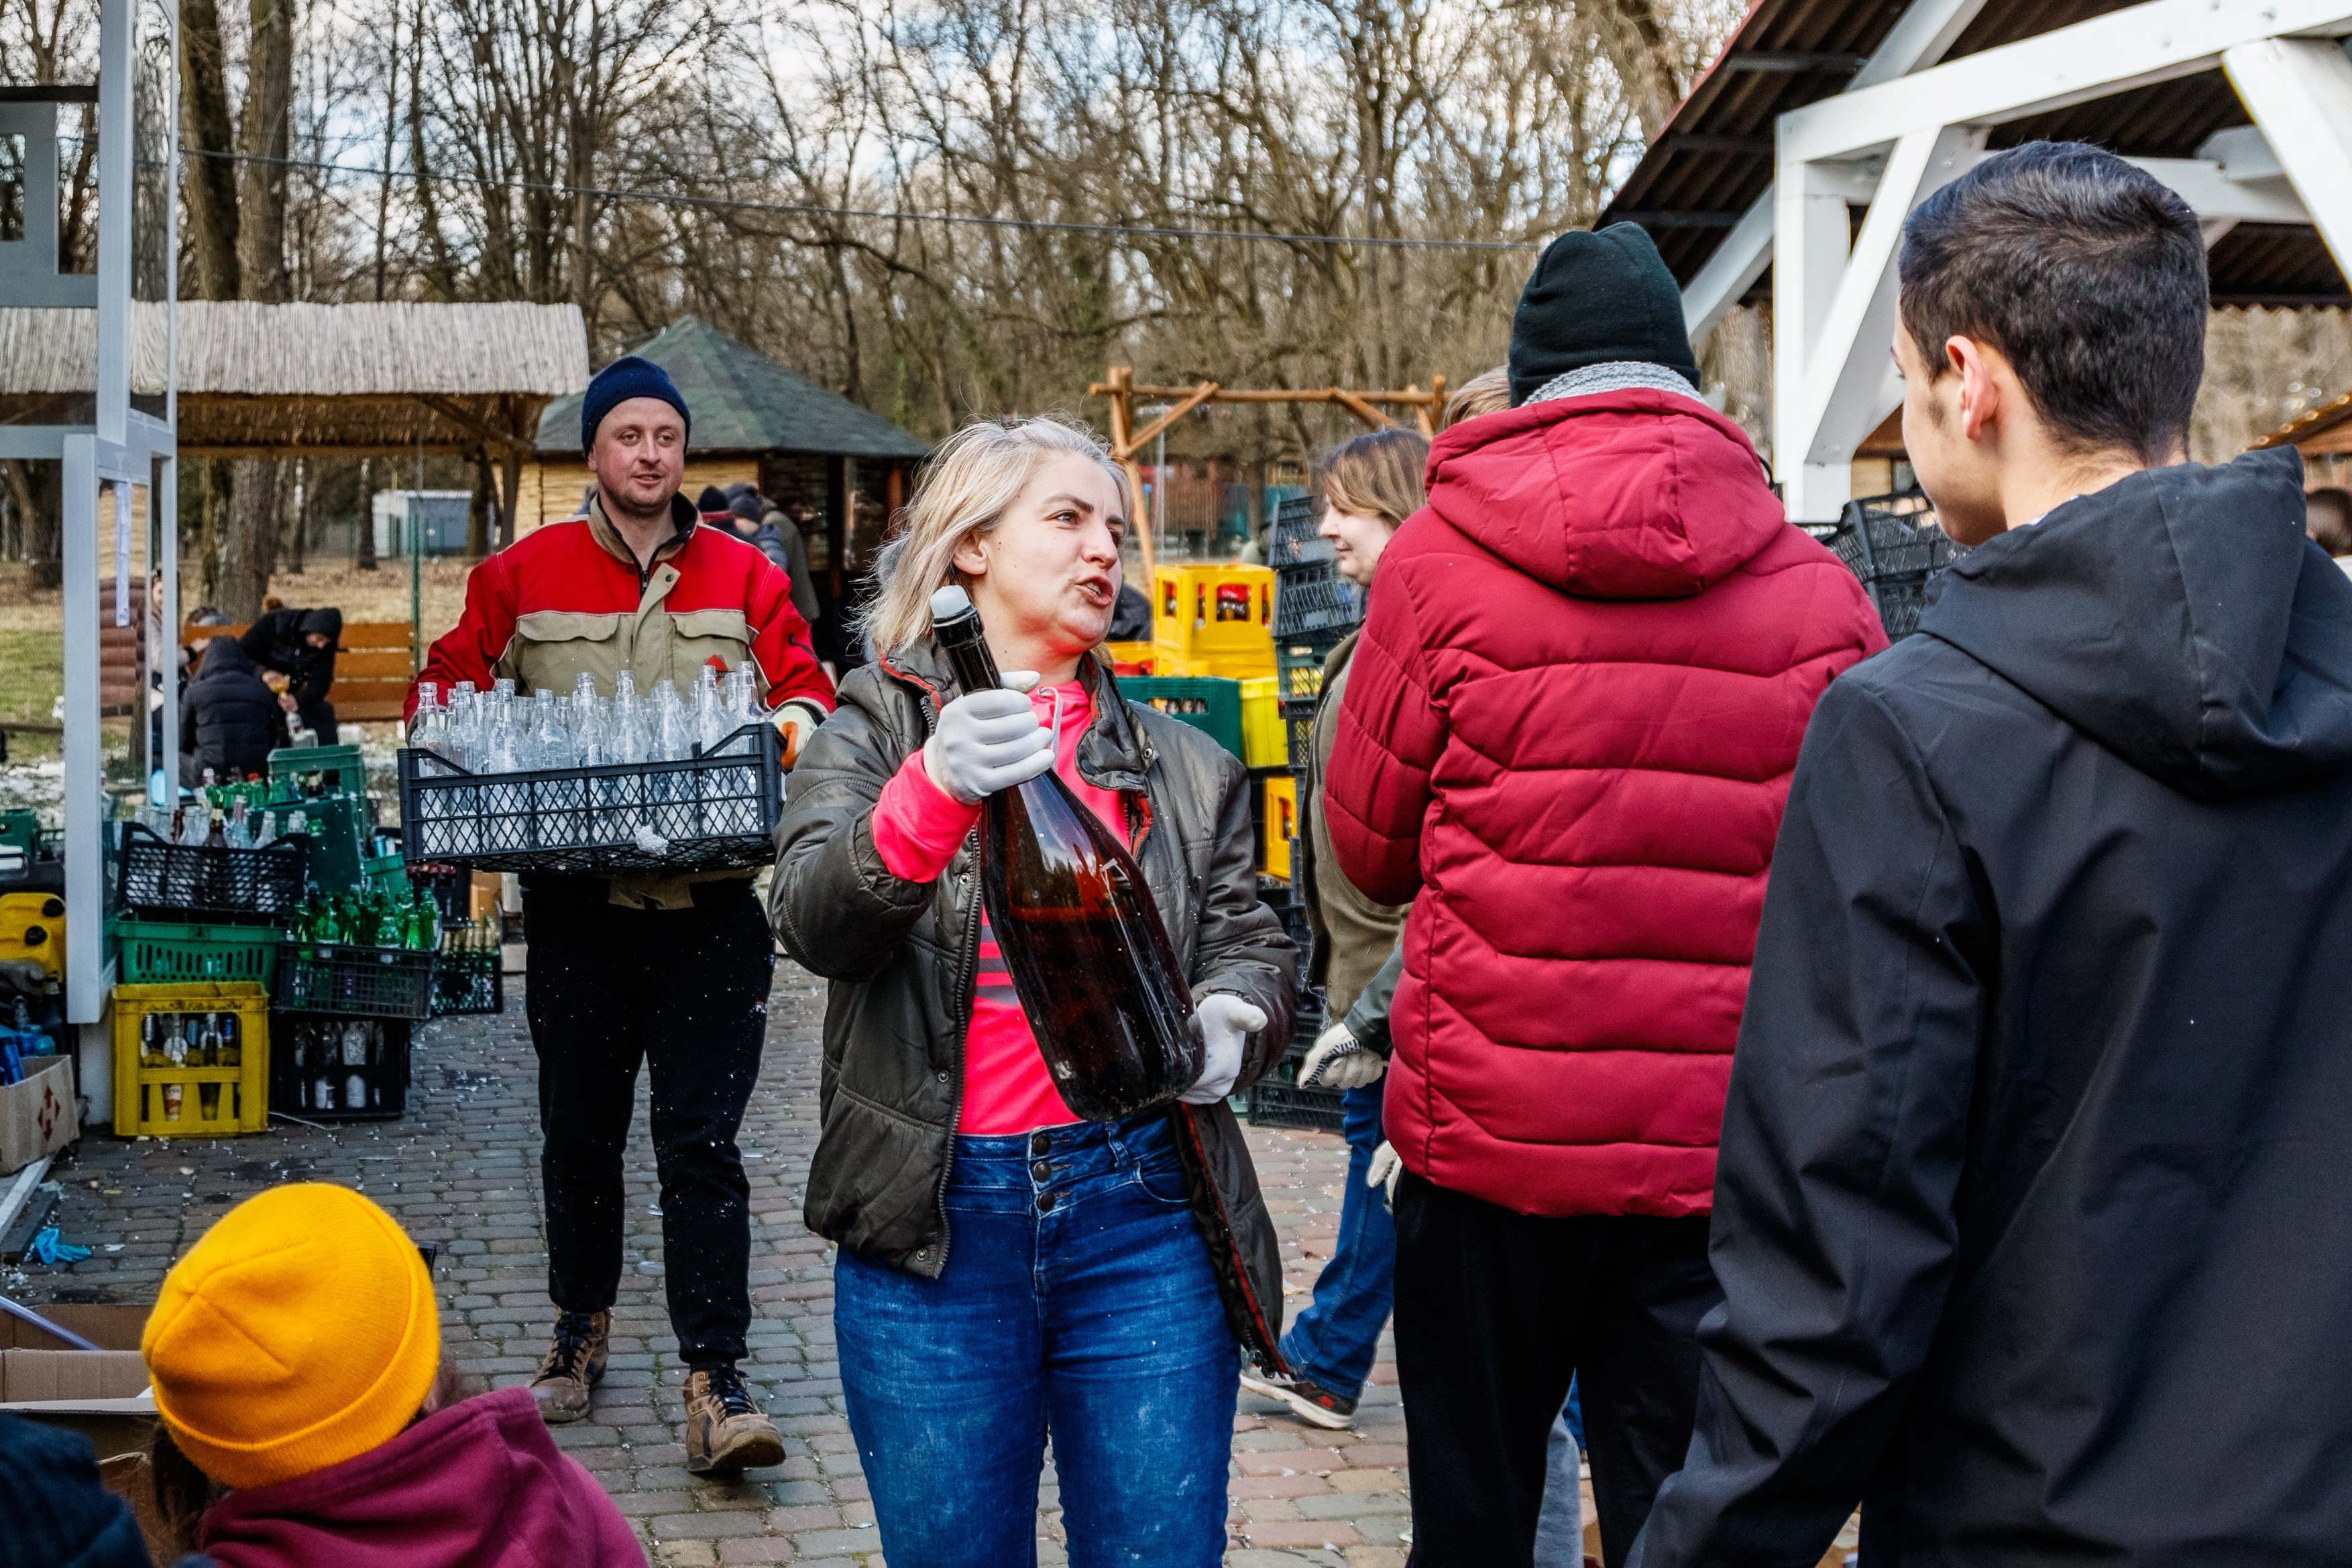 Ужгород, Україна — 28 лютого 2022 року: Волонтери готують коктейлі Молотова в одному з місцевих парків